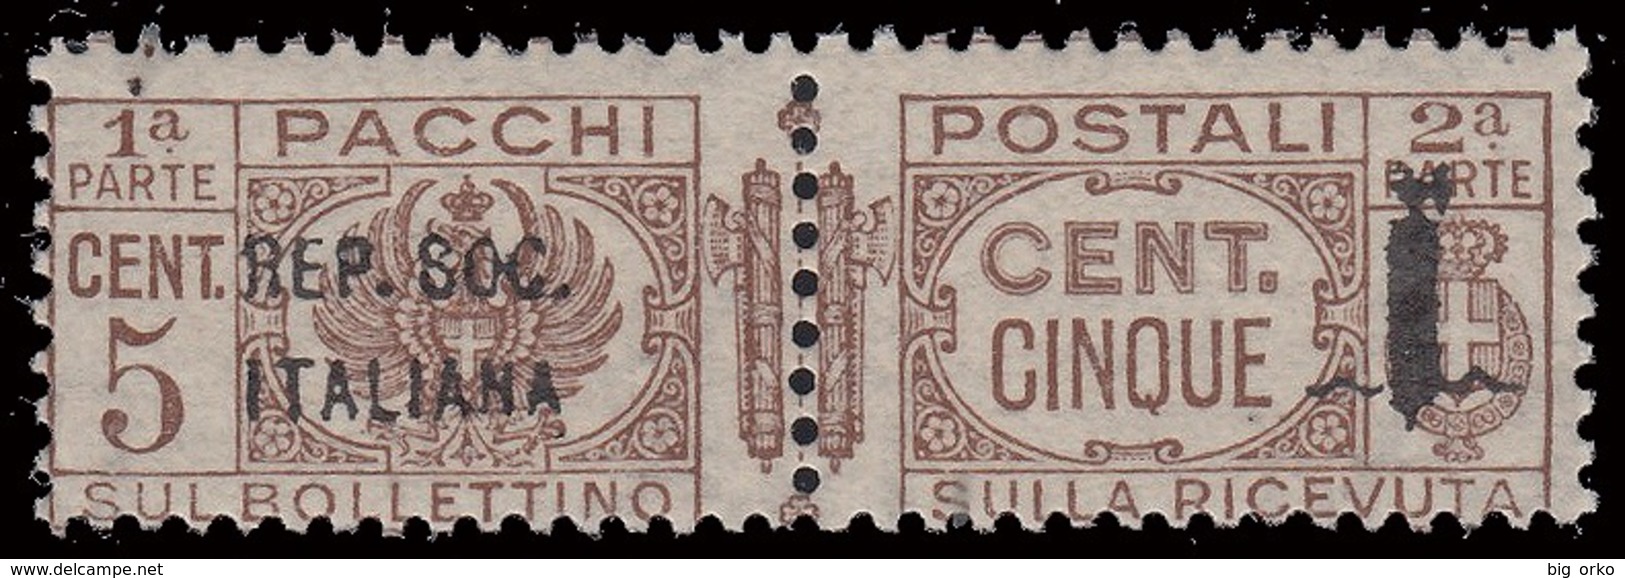 Italia: R.S.I. - Pacchi Postali: 5 C. Bruno - 1944 - Pacchi Postali